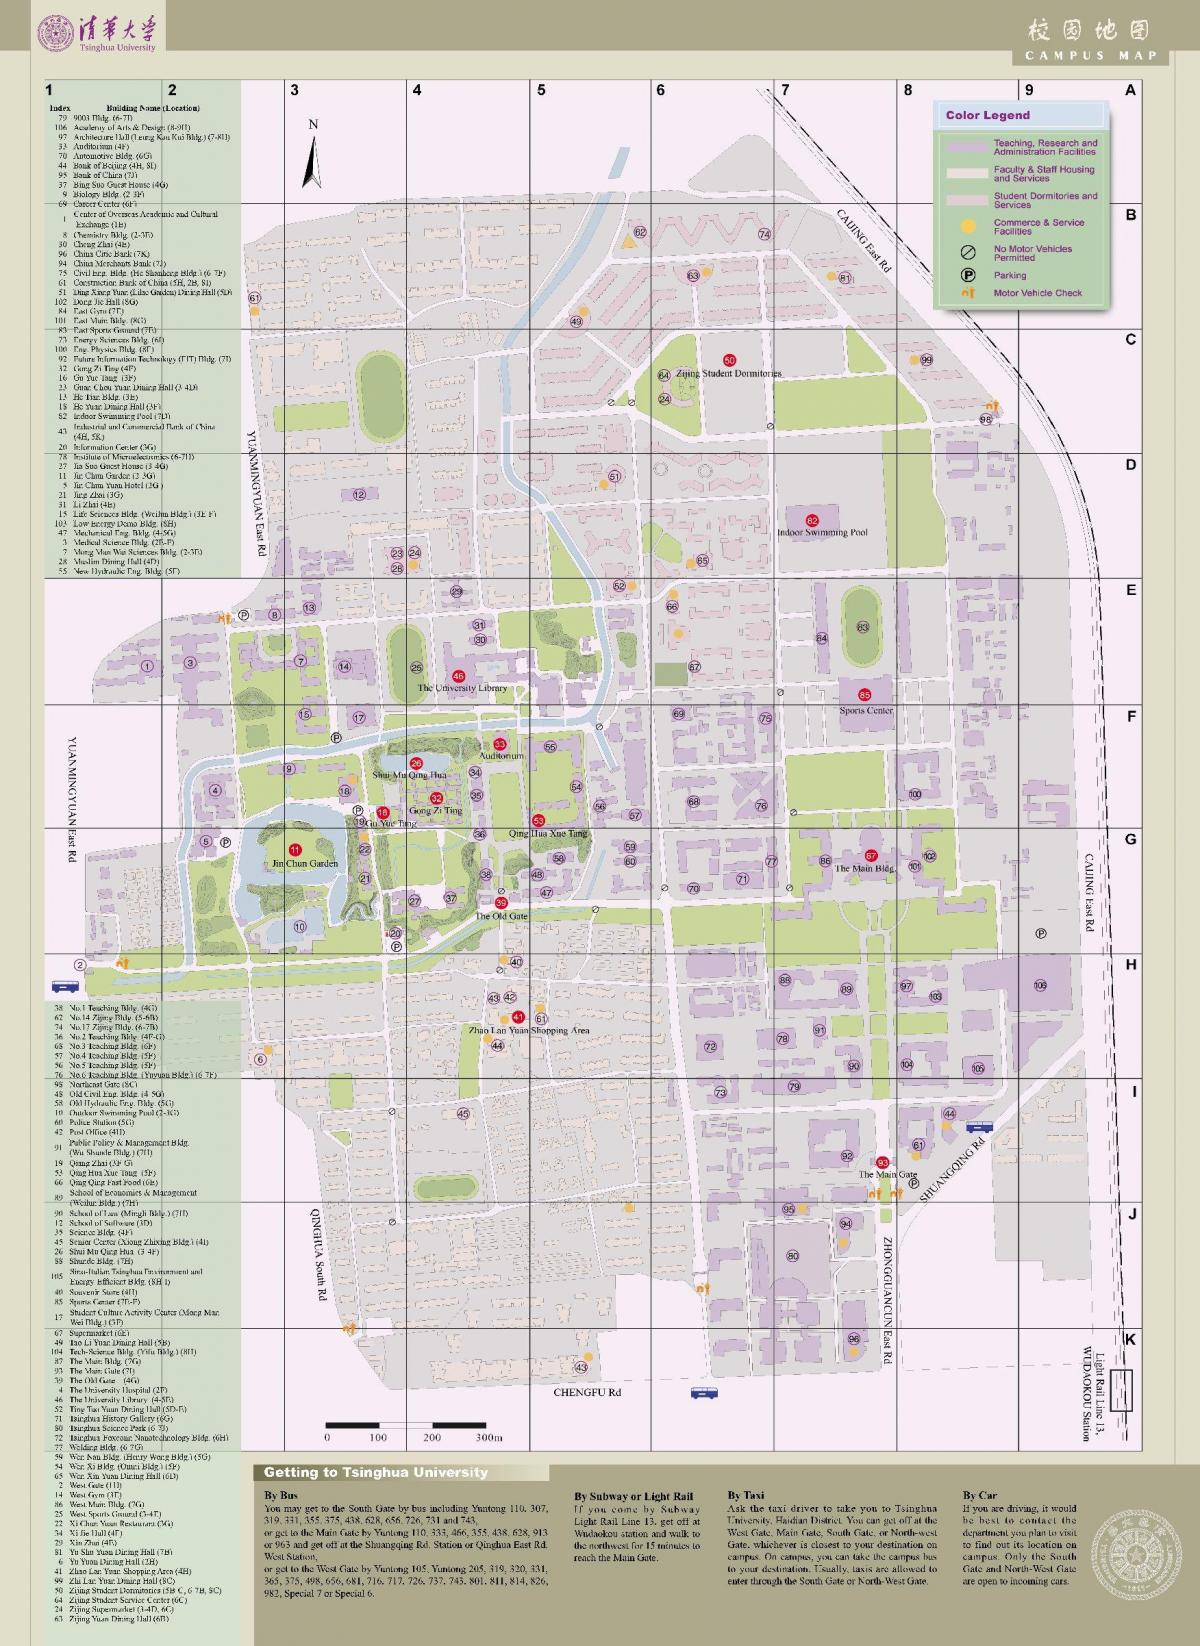 清华大学校园地图